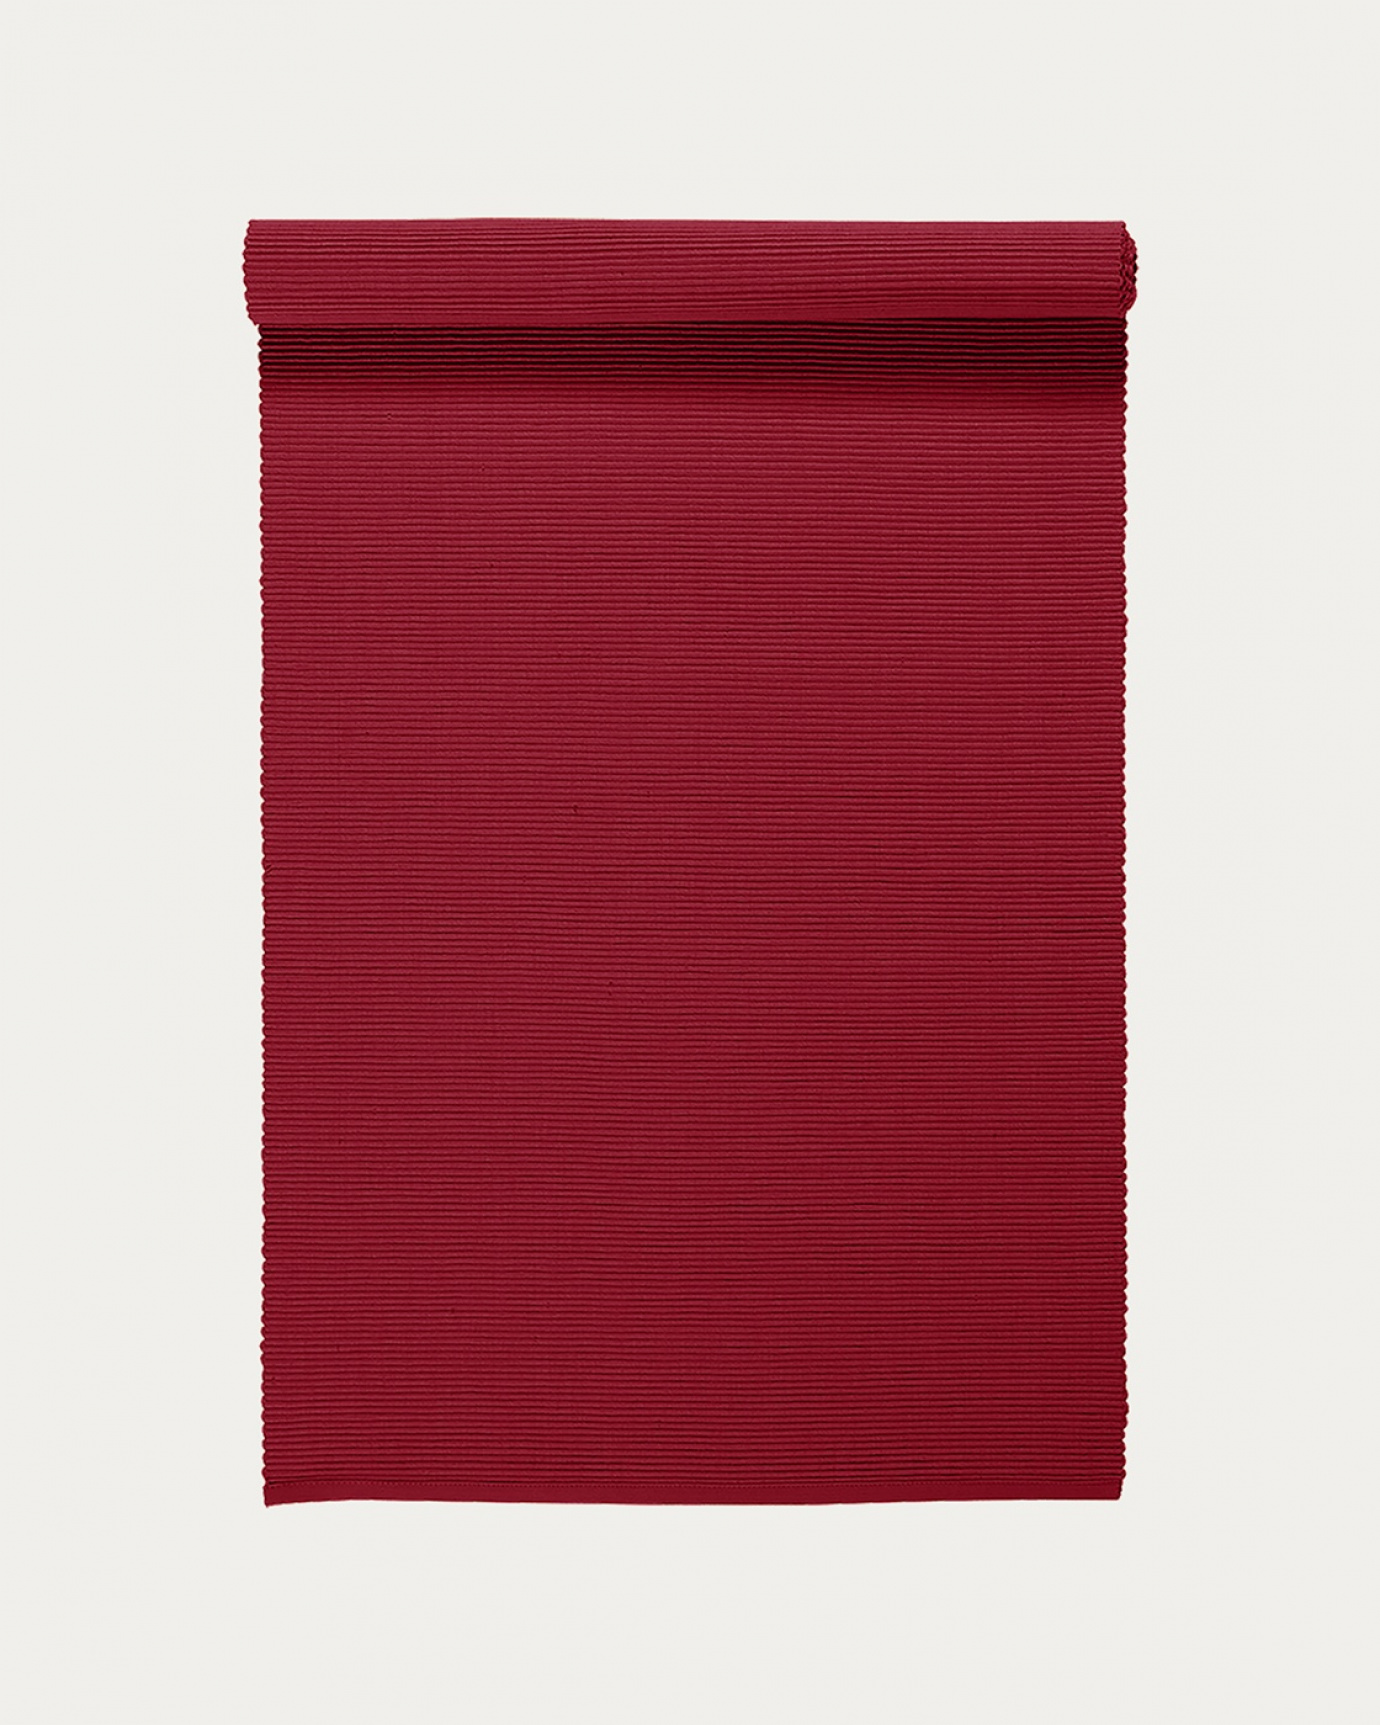 Produktbild röd UNI löpare av mjuk bomull i ribbad kvalité från LINUM DESIGN. Storlek 45x150 cm.